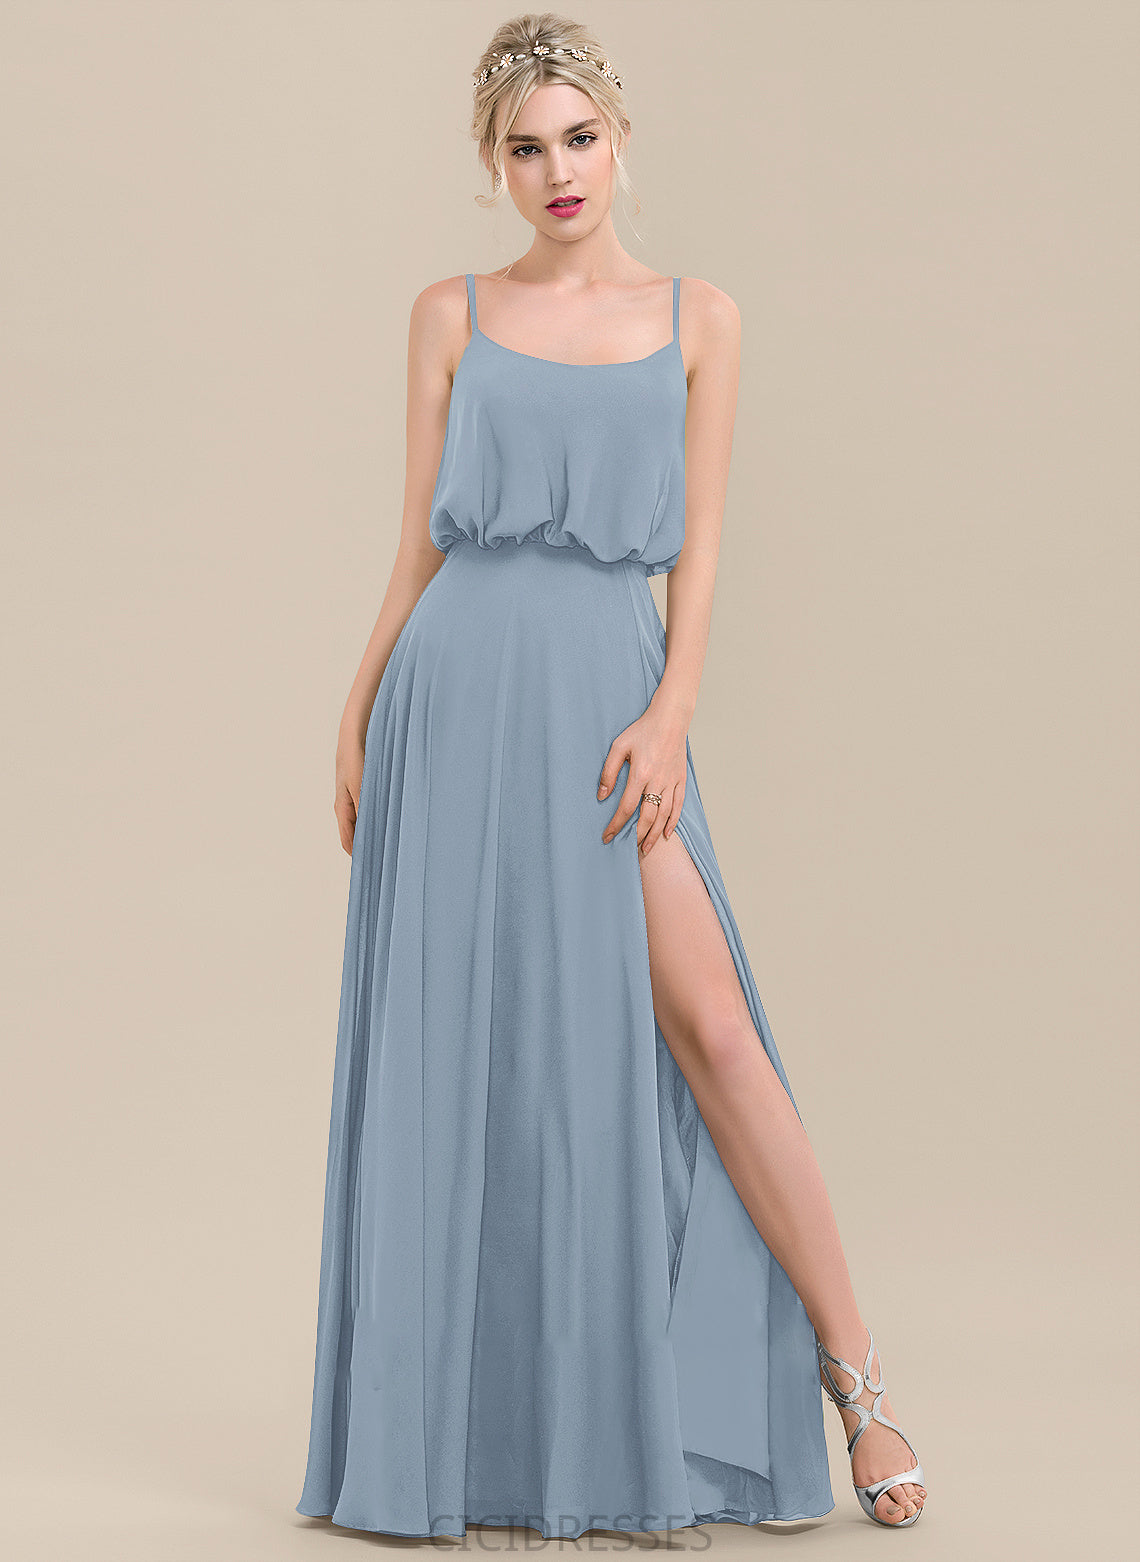 Length A-Line Neckline SquareNeckline SplitFront Embellishment Silhouette Fabric Floor-Length Kiley V-Neck Natural Waist Bridesmaid Dresses